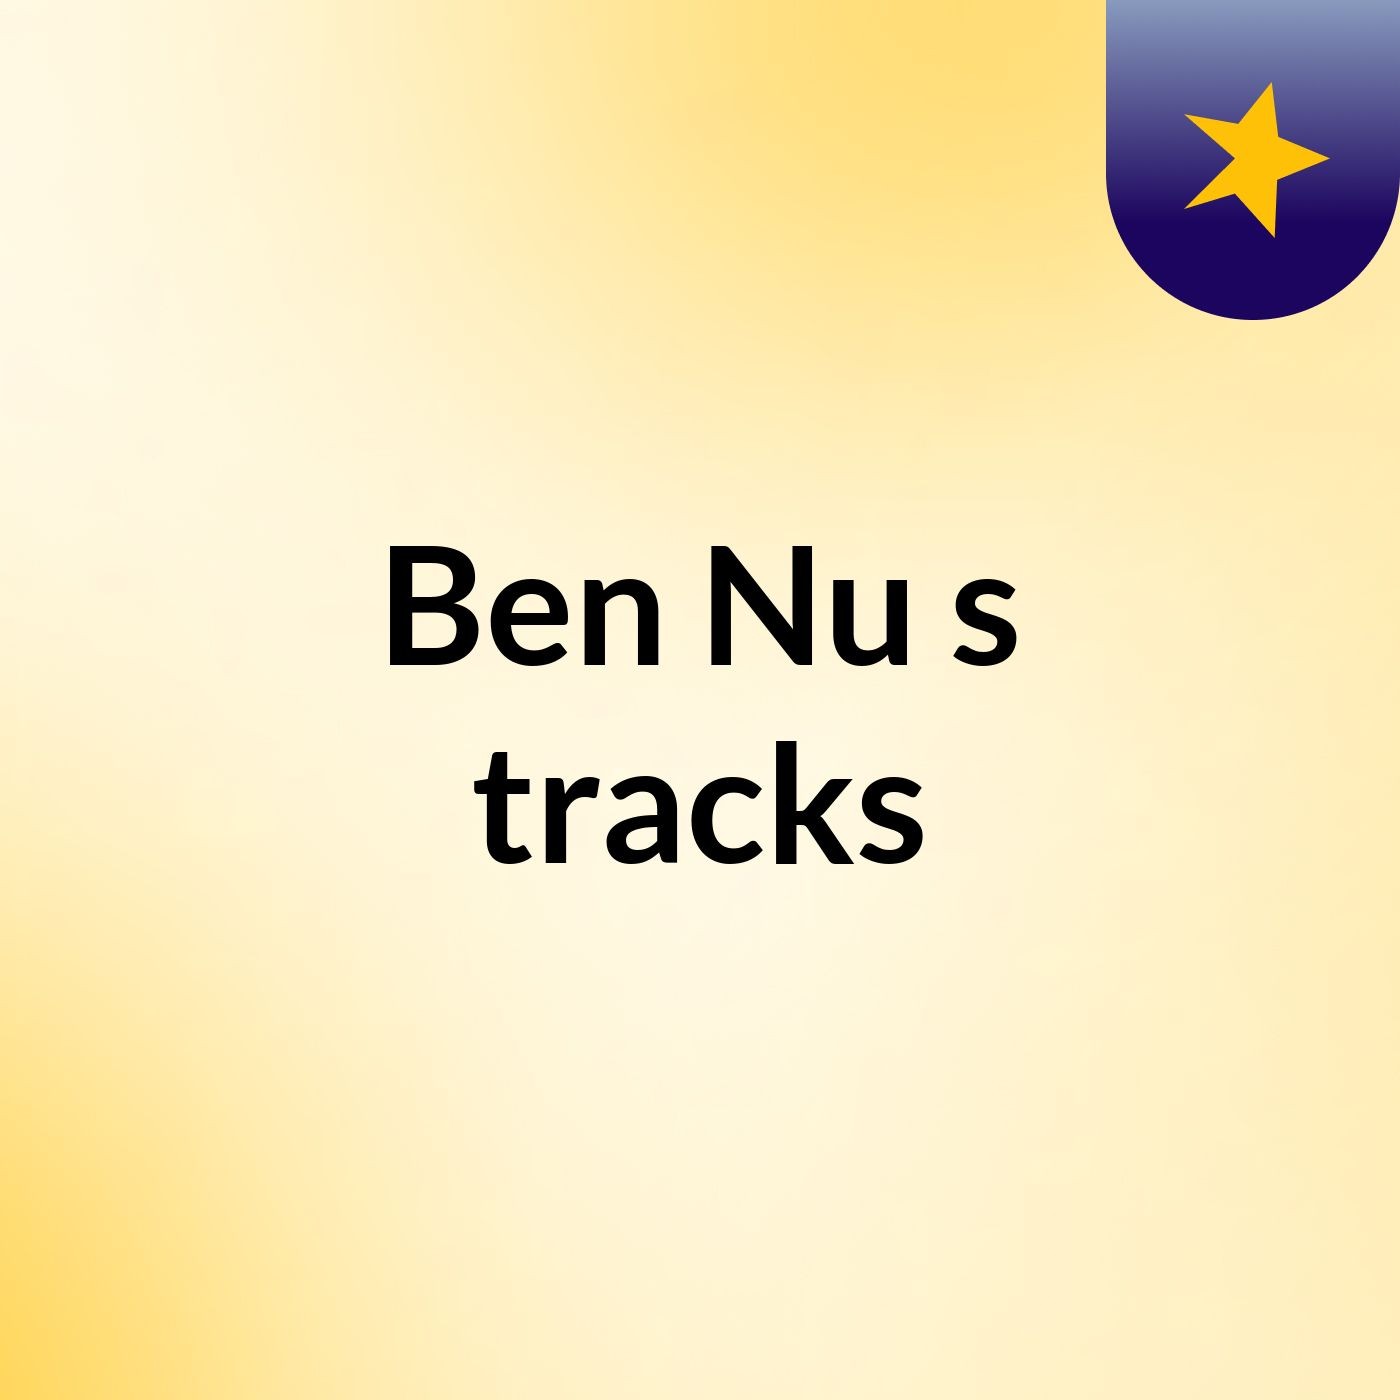 Ben Nu's tracks